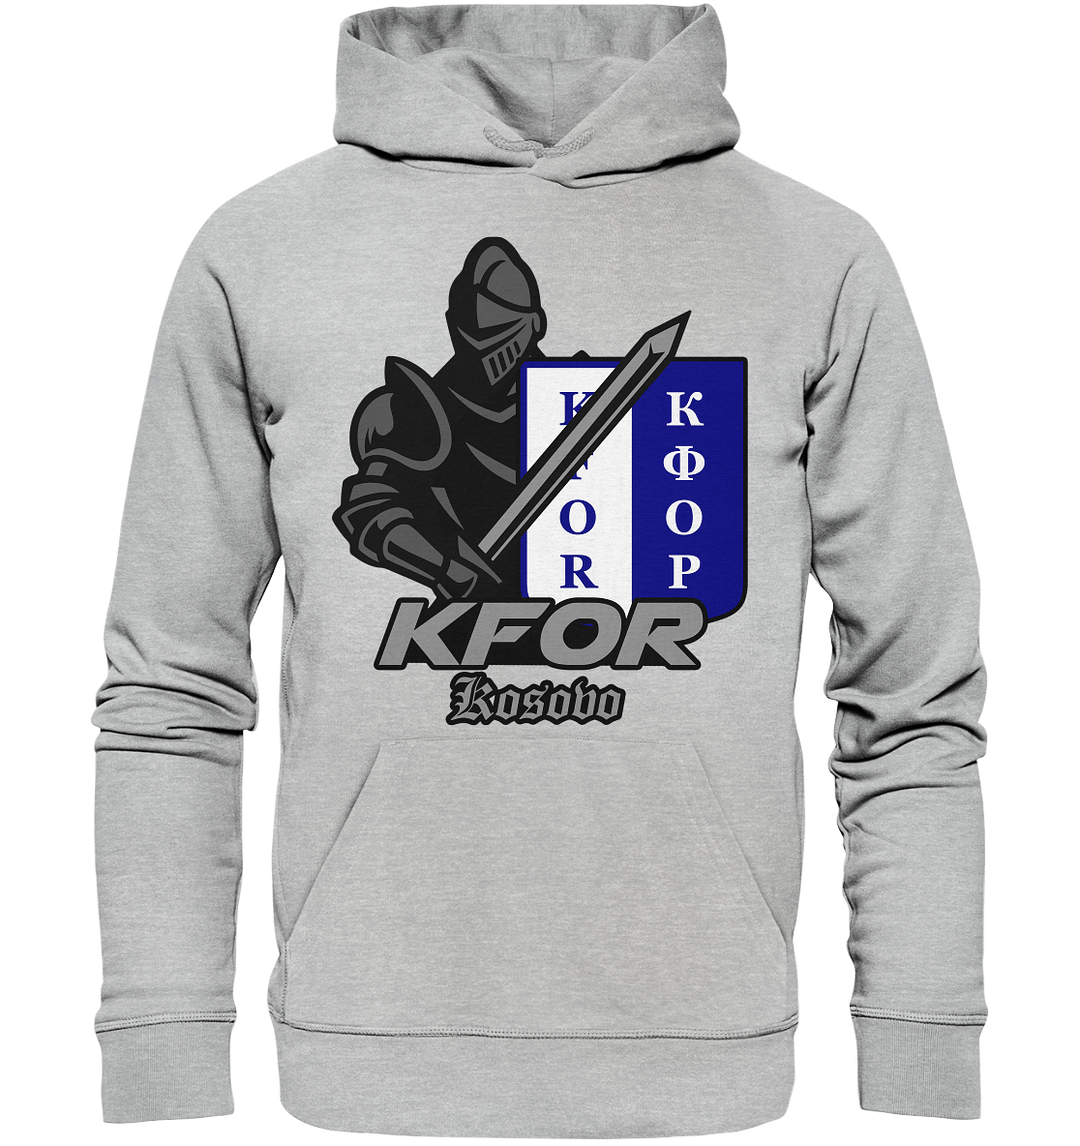 "KFOR Kosovo - Ritter" - Premium Unisex Hoodie